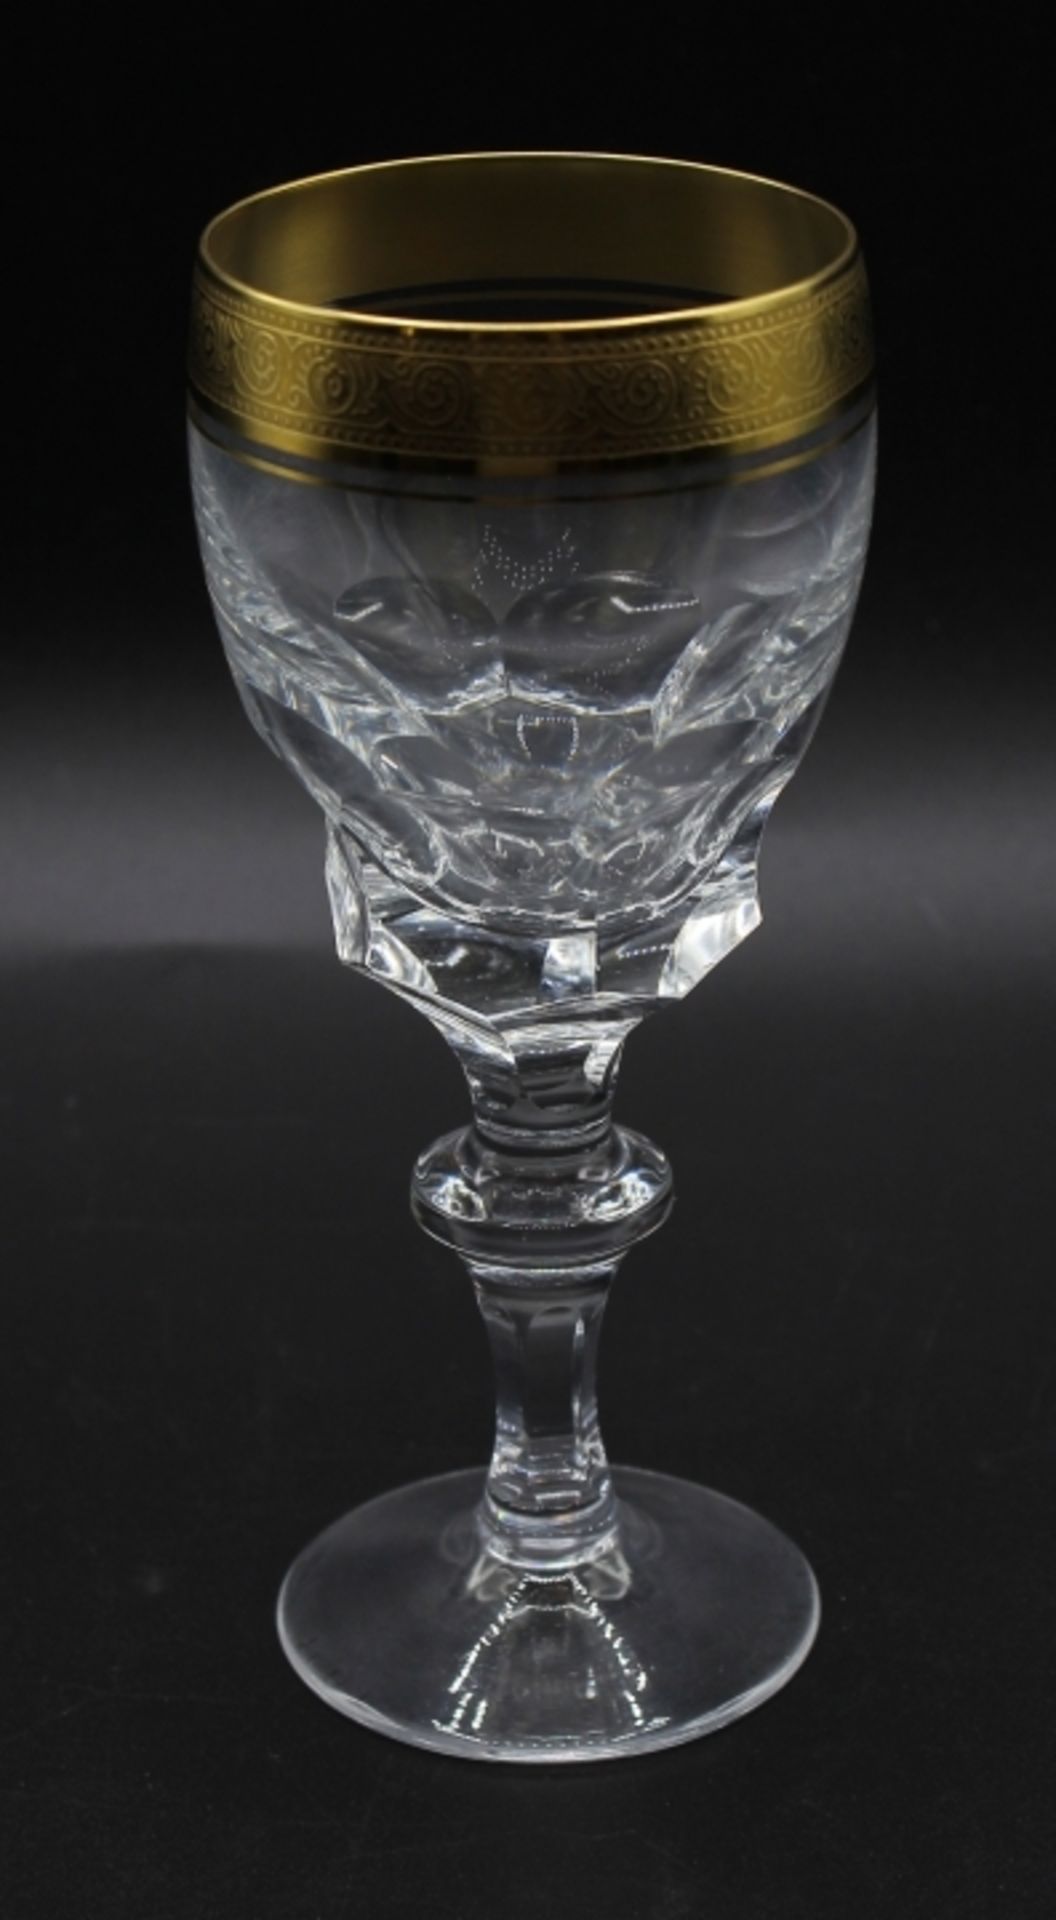 12 Weingläser - Theresienthal Bernadotte Kristallglas mit breiter Goldätzkante, Höhe ca. 16 cm, kein